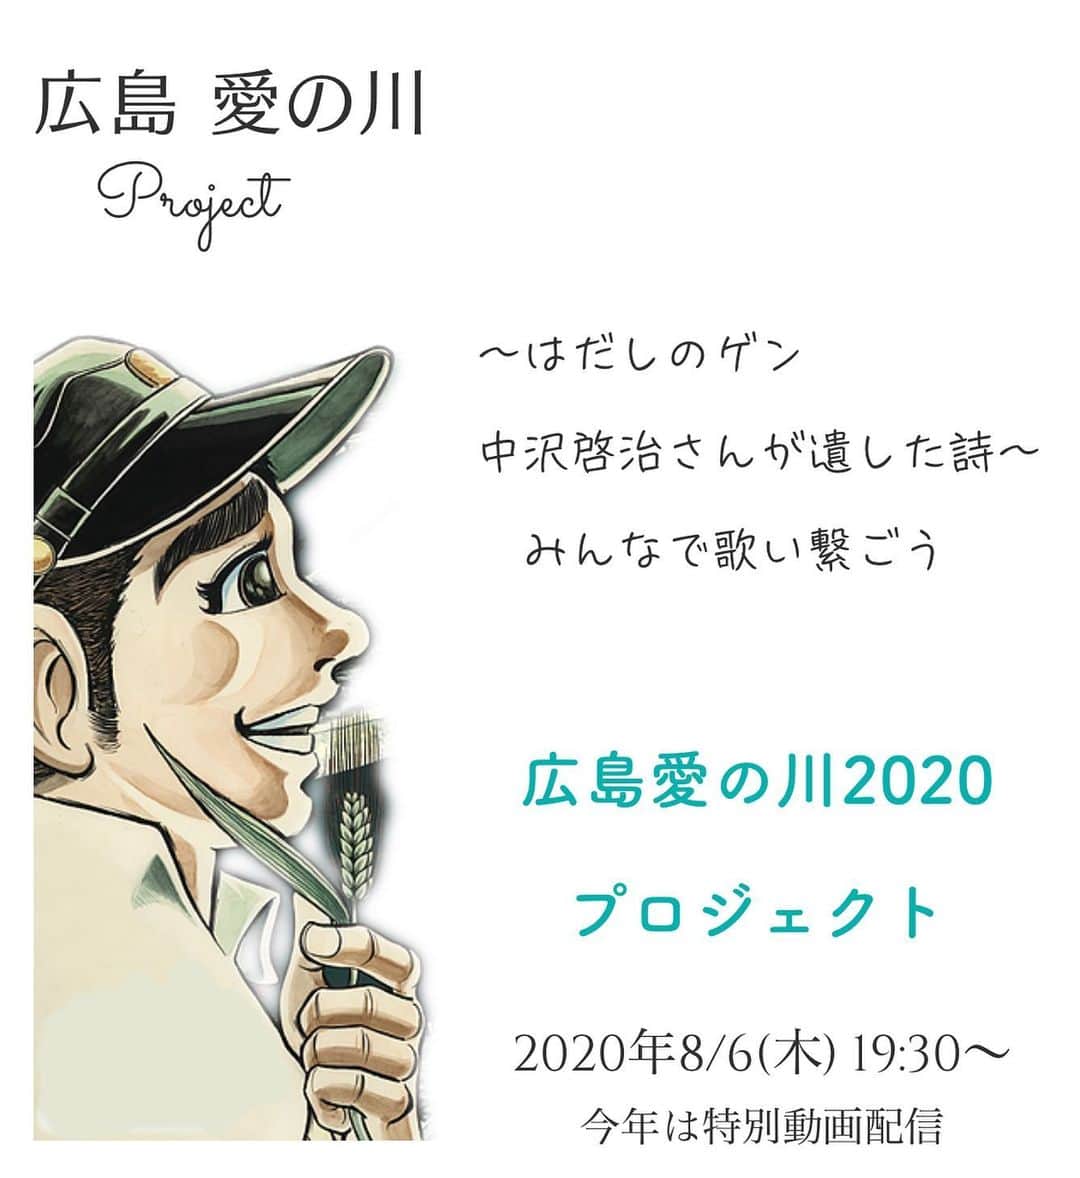 ふくい舞のインスタグラム：「いよいよ本日、総勢大合奏が公開されます！  中沢さんの想い 「未来が優しさであふれますように」 そんな気持ちを込めて歌わせていただきました  是非、観てくださいね🕊✨  予告動画は公開されています。  ８/6 19:30に #広島愛の川2020 を公開させていただきます。 先立ちまして、動画の一部を公開です。  本編は以下サイトで公開しますので是非ご視聴ください。 ○ainokawa.com ○tourounagashi.org  ゲンが夢みた -国境のない平和な世界へ-  広島愛の川プロジェクト２０２０ 〜ゲンが夢見た　国境のない世界へ〜  あれから７５年、８月６日 はだしのゲンの作者、中沢啓治さんが未来へと遺した詩「広島愛の川」 日本各地の子供達、海外１６カ国の子供達、思いを寄せた歌手の方々が声を重ねました。 演奏は広島交響楽団と新日本フィルハーモニー交響楽団（リモート）によるオーケストラの共演。 総勢２５０名の思いが詰まった動画が完成しました。  〜動画の配信について〜  ＜日時＞ ８月６日（木）  １９：３０〜　（とうろう流しの流灯式映像に合わせスタート、広島会場内中継などと合わせ７回配信）  ＜ご覧頂けるサイト＞ ●「広島愛の川」プロジェクトHP（http://ainokawa.com）  ●  特設サイト（ONLINEとうろう流し×広島愛の川2020） （http://tourounagashi.org）（ ※サイト開設期間 2020年8月5日(水)~8月31日(月)　）  ●  YoutubeLive（https://www.youtube.com/channel/UCAsz0qYU6S_-7rsJw0ffszg?view_as=subscriber）（リアルタイム配信）  ＜他＞ ●  広島市民球場跡地設置スクリーン、広島市内各地の街頭ビジョン  ＜ゲスト歌手＞（歌唱順） 加藤登紀子、二階堂和美、堂珍嘉邦(CHEMISTRY)、TEE、ふくい舞、島谷ひとみ、クリス・ハート ＜演奏＞ 広島交響楽団、新日本フィルハーモニー交響楽団  ▽▽▽▽  #広島愛の川2020 動画視聴は、 8/6(木)19:30より、下記の場所で公開予定  🌐広島愛の川HP ainokawa.com  🌐YouTube LIVE youtube.com/watch?v=axH8dN…  🌐ONLINEとうろう流し×広島愛の川2020 特設サイト tourounagashi.org  🌐広島市各地のビジョン 広島市民球場跡地設置スクリーン等  #広島から世界に #広島愛の川」